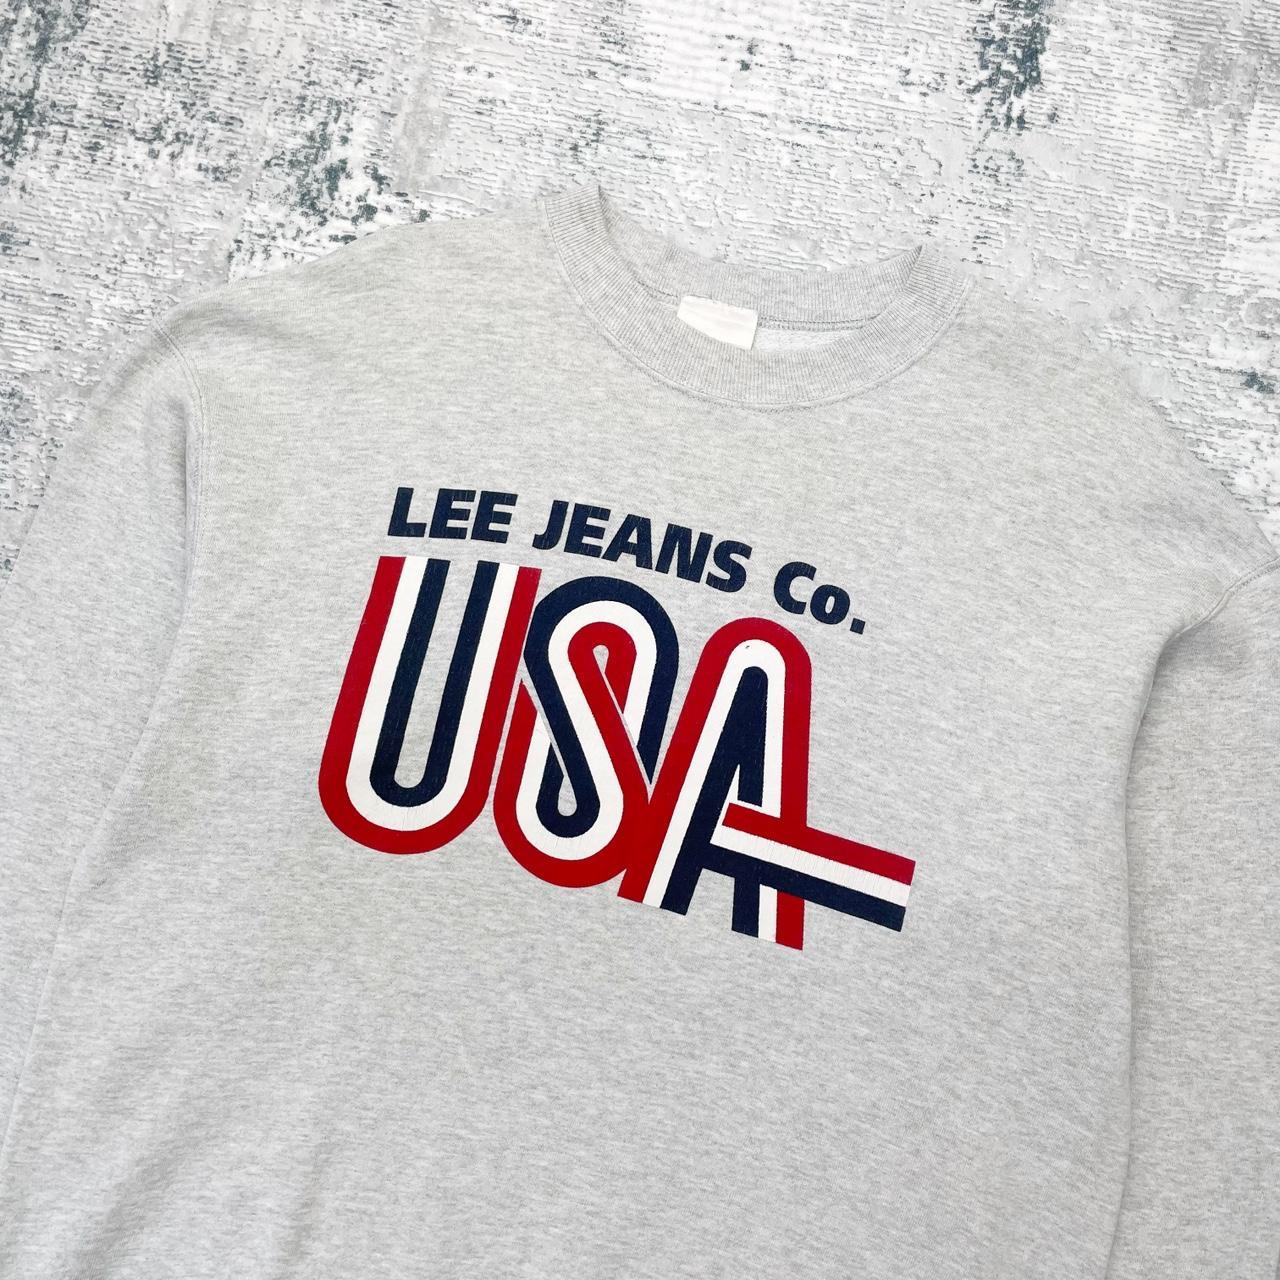 Vintage Lee Jeans USA Sweatshirt - Large